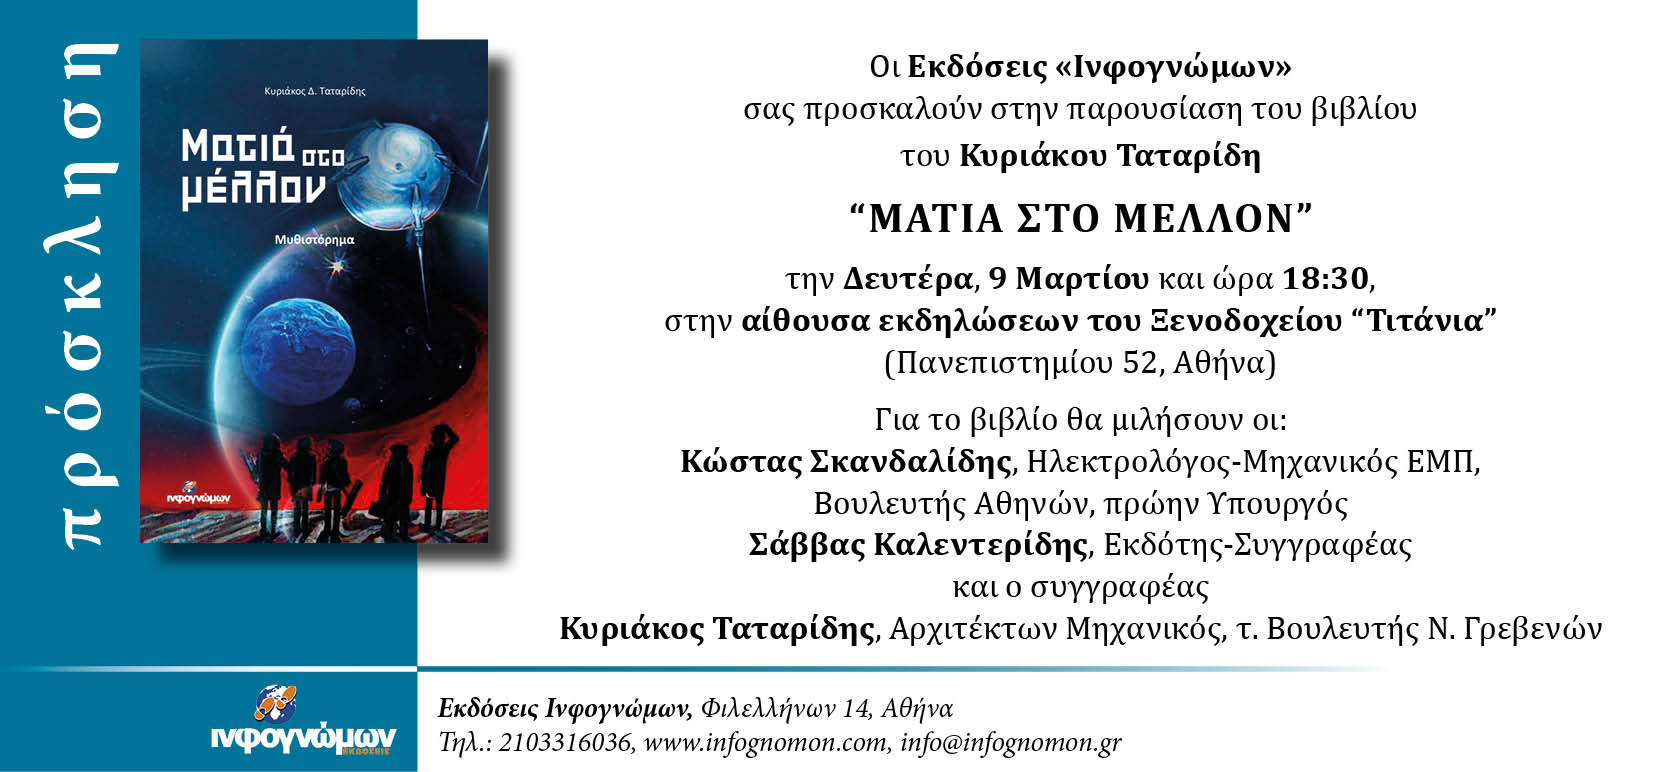 Πρόσκληση σε παρουσίαση του βιβλίου του Κυριάκου Ταταρίδη “Ματιά στο Μέλλον”, Δευτέρα, 9 Μαρτίου, Τιτάνια